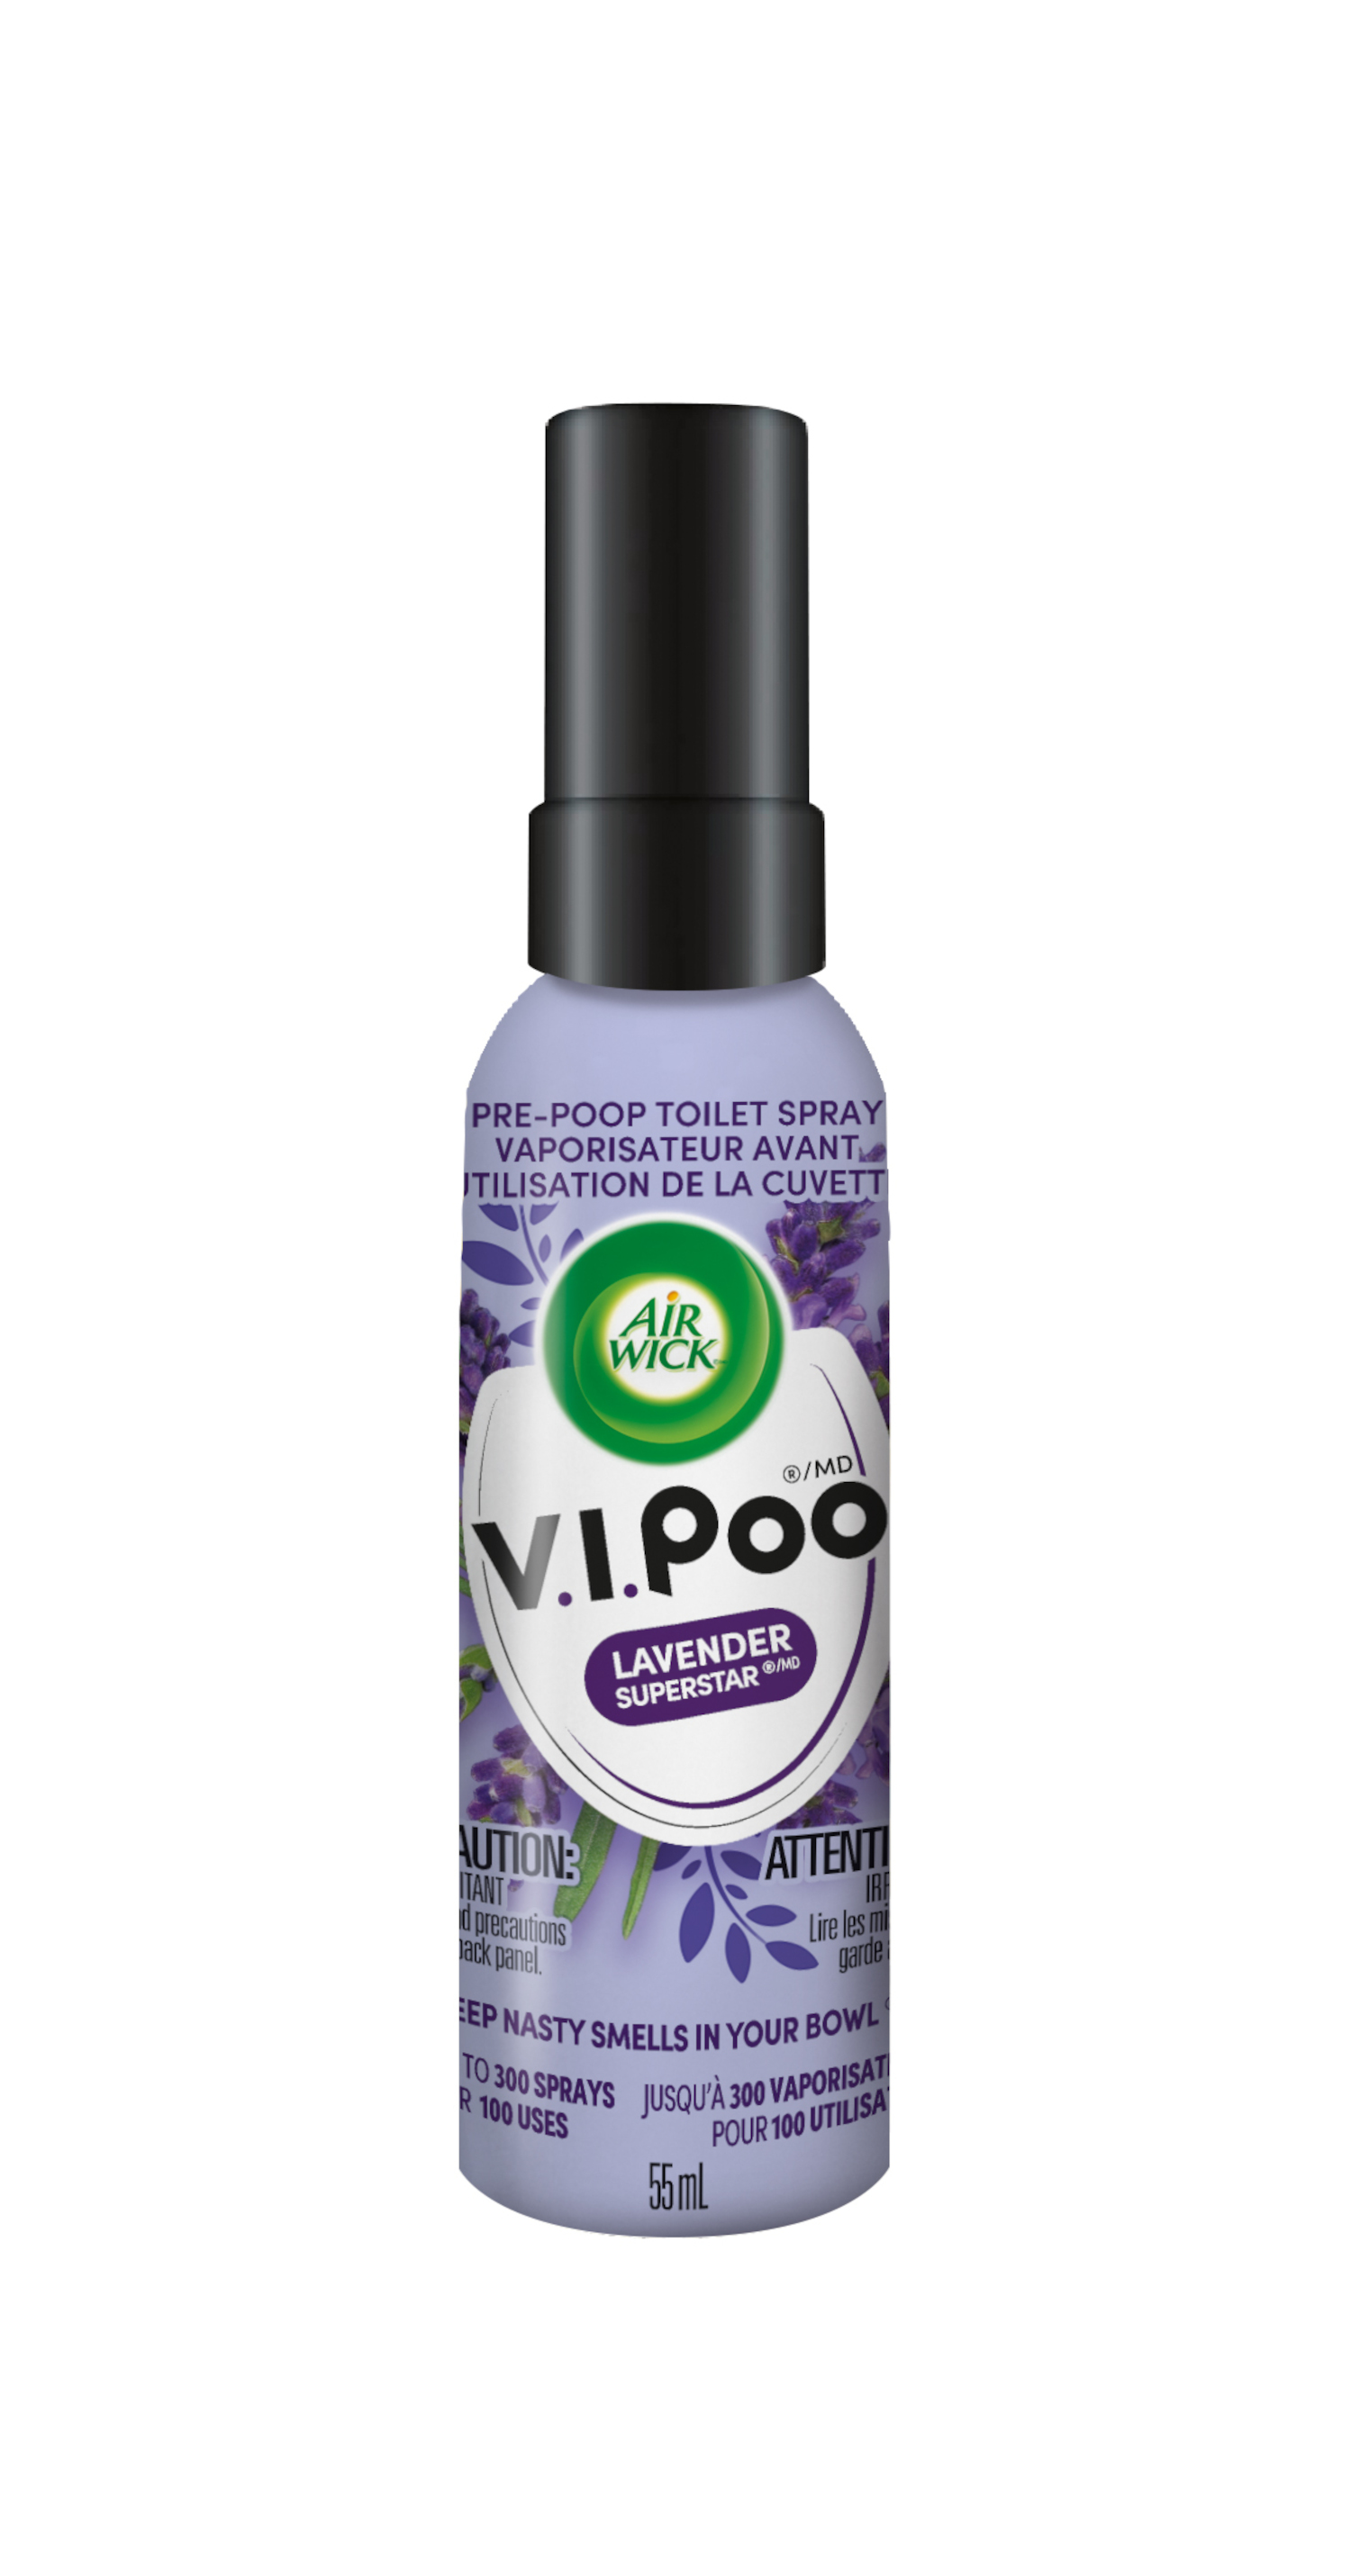 Air Wick ViPoo Pre-Poo Toilet Spray Lemon Idol 55ml